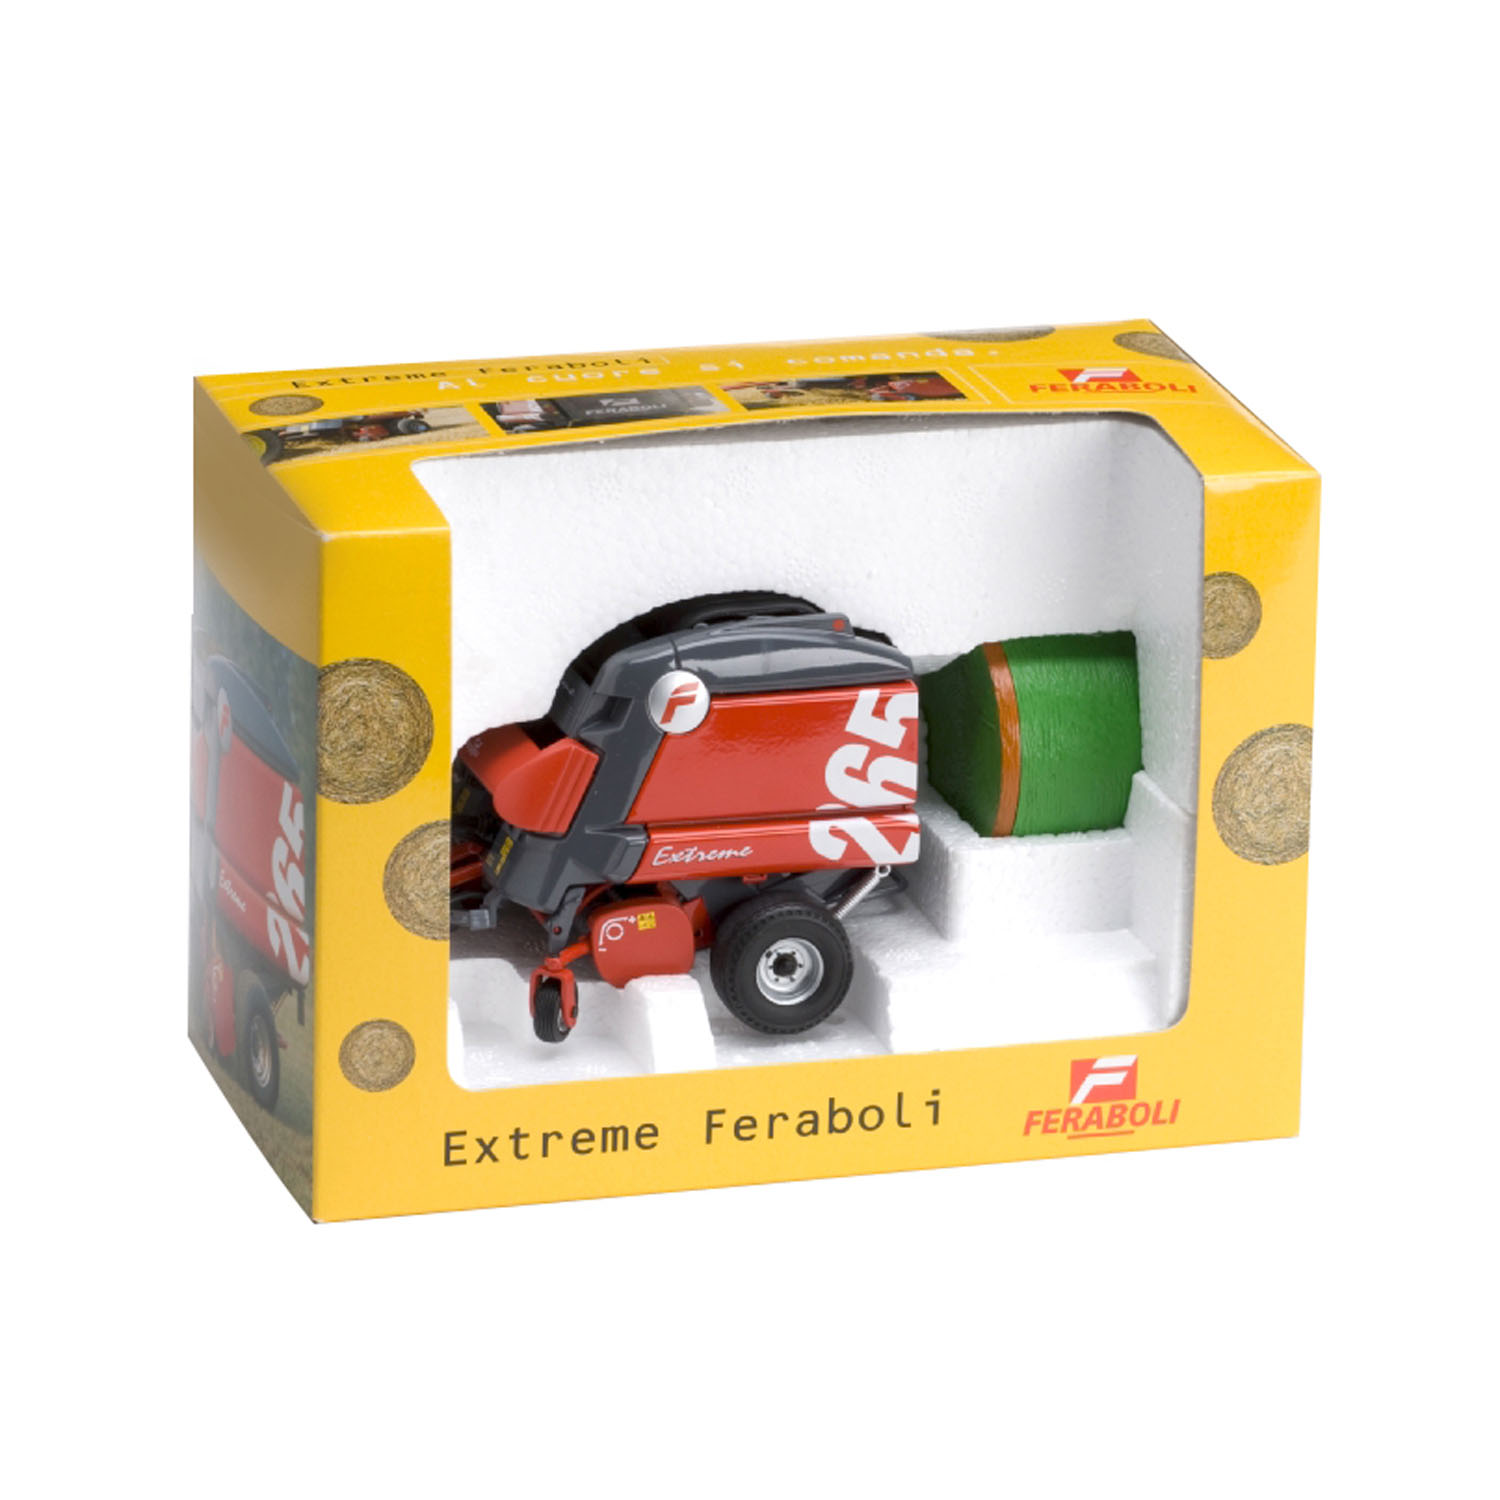 Feraboli F265 Extreme Rotopressa 1:32 Model ROS60113 ROS 